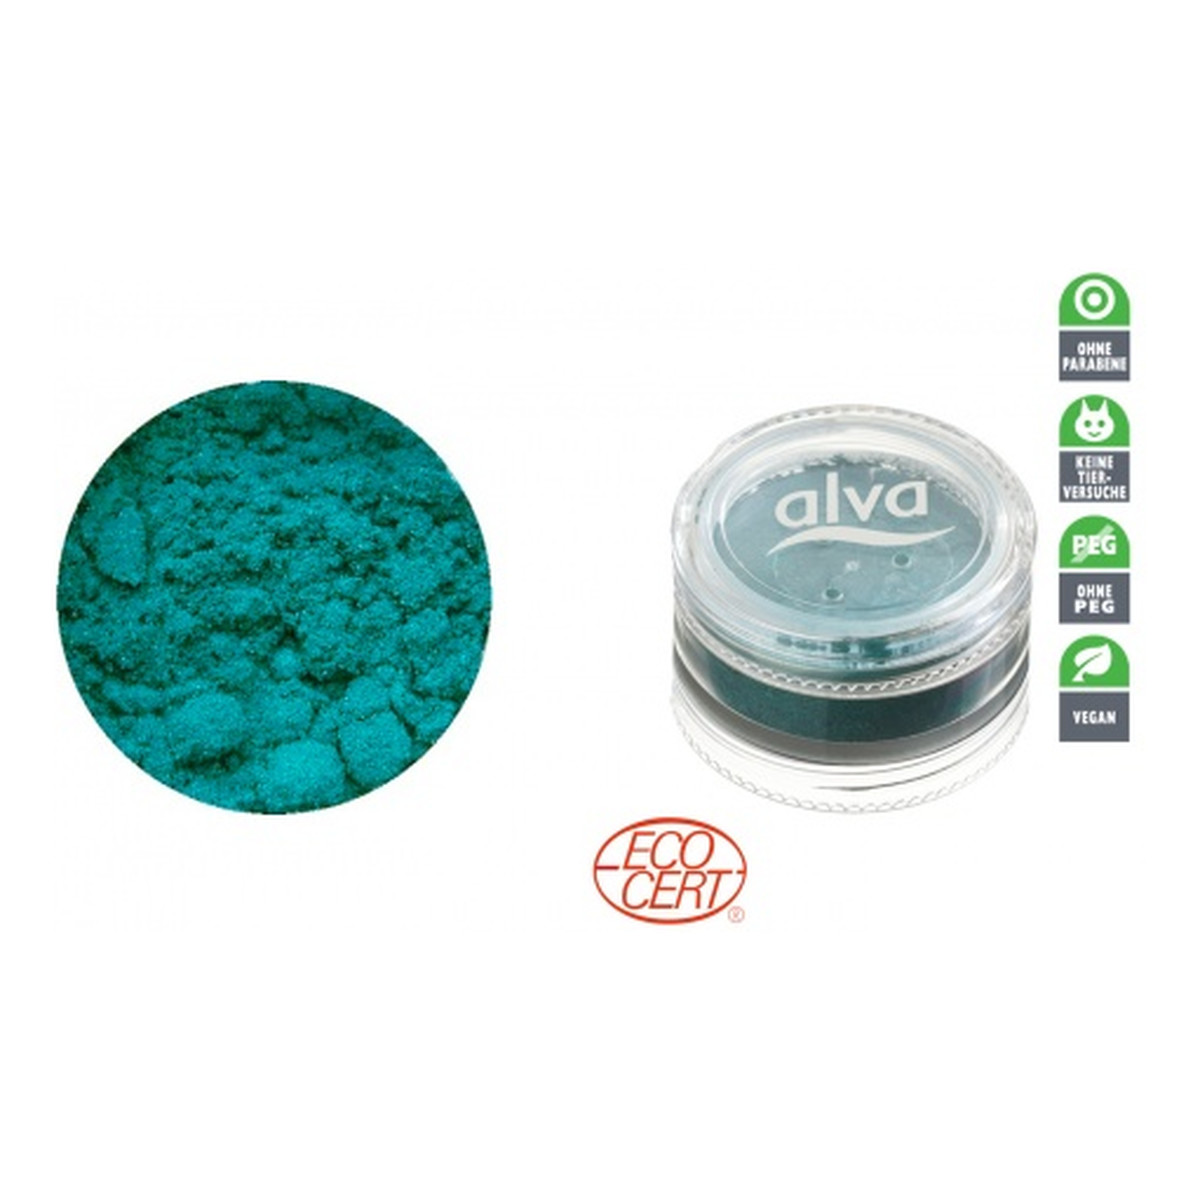 ALVA GREEN EQUINOX Pigment Enchanting Sea 2g